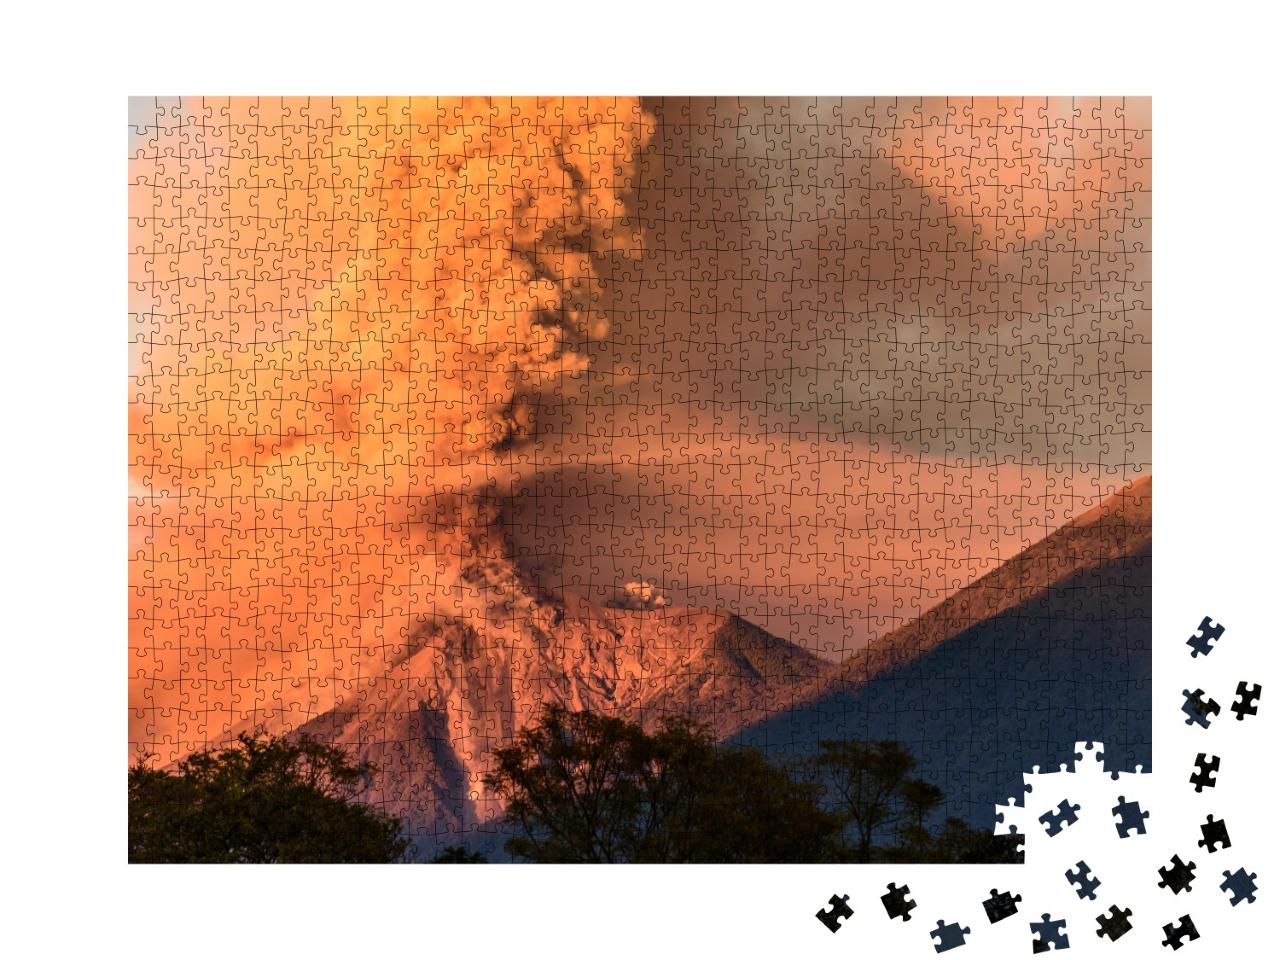 Puzzle de 1000 pièces « Éruption du volcan Fuego à l'aube, Guatemala »